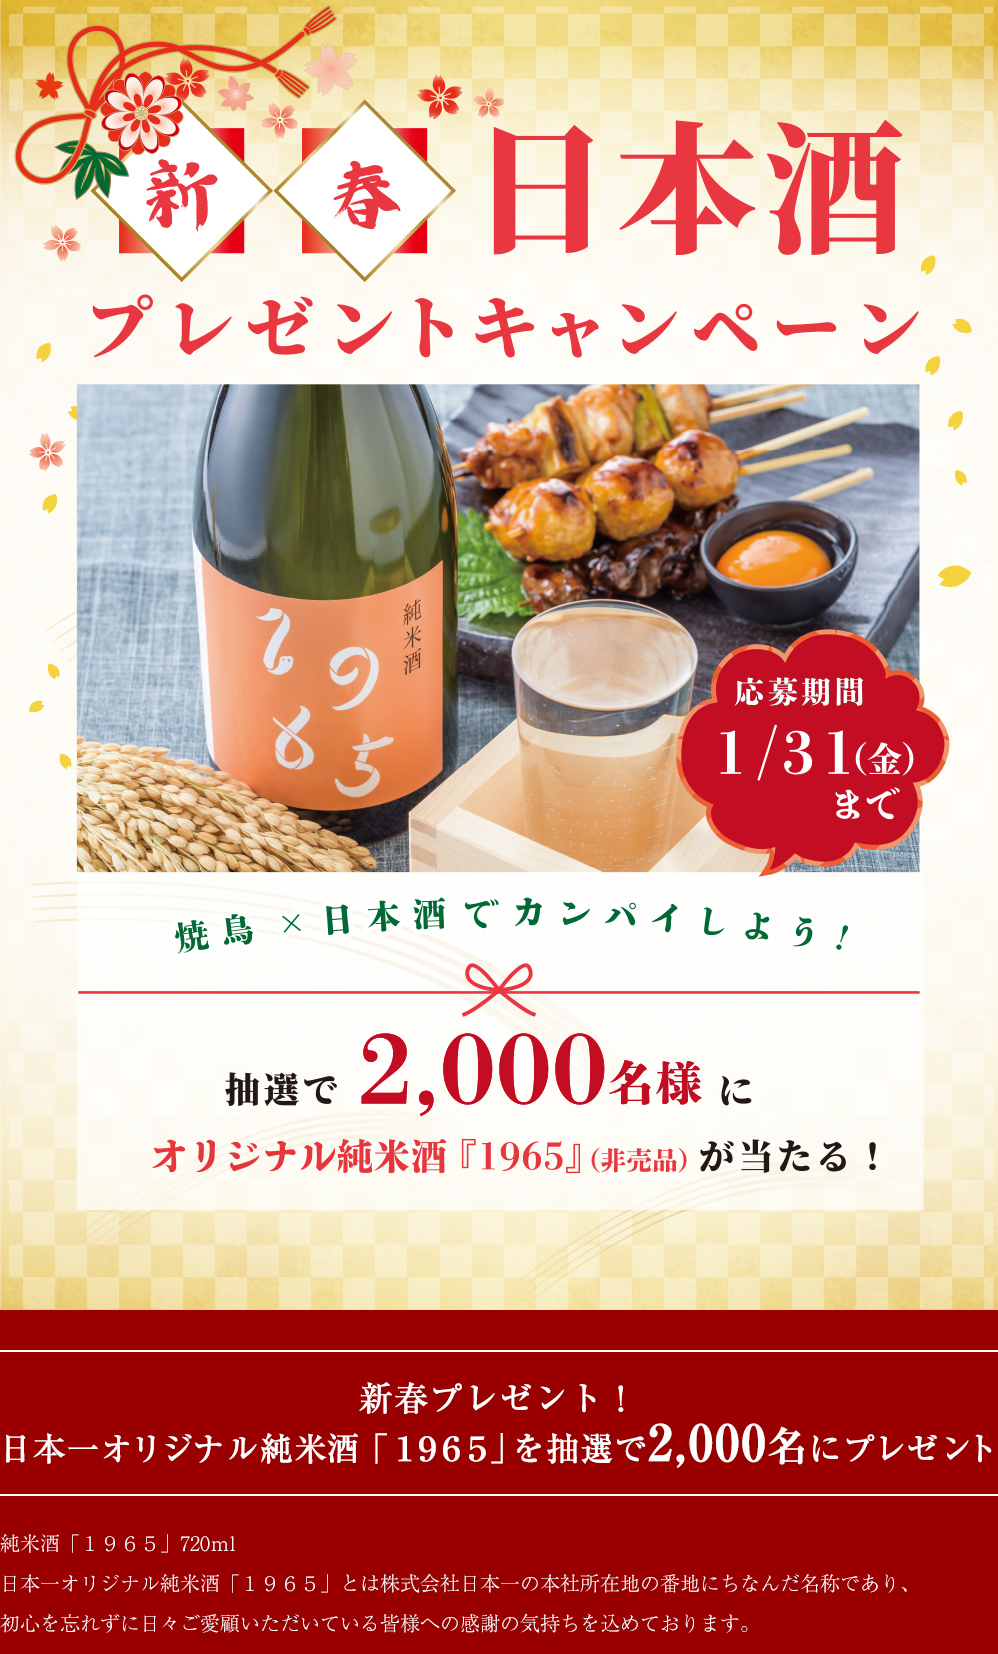 日本一の焼鳥に合う日本酒が当たる 新春プレゼントキャンペーン 抽選で2000名様に当たる！開催期間2020年1月31日（金）まで